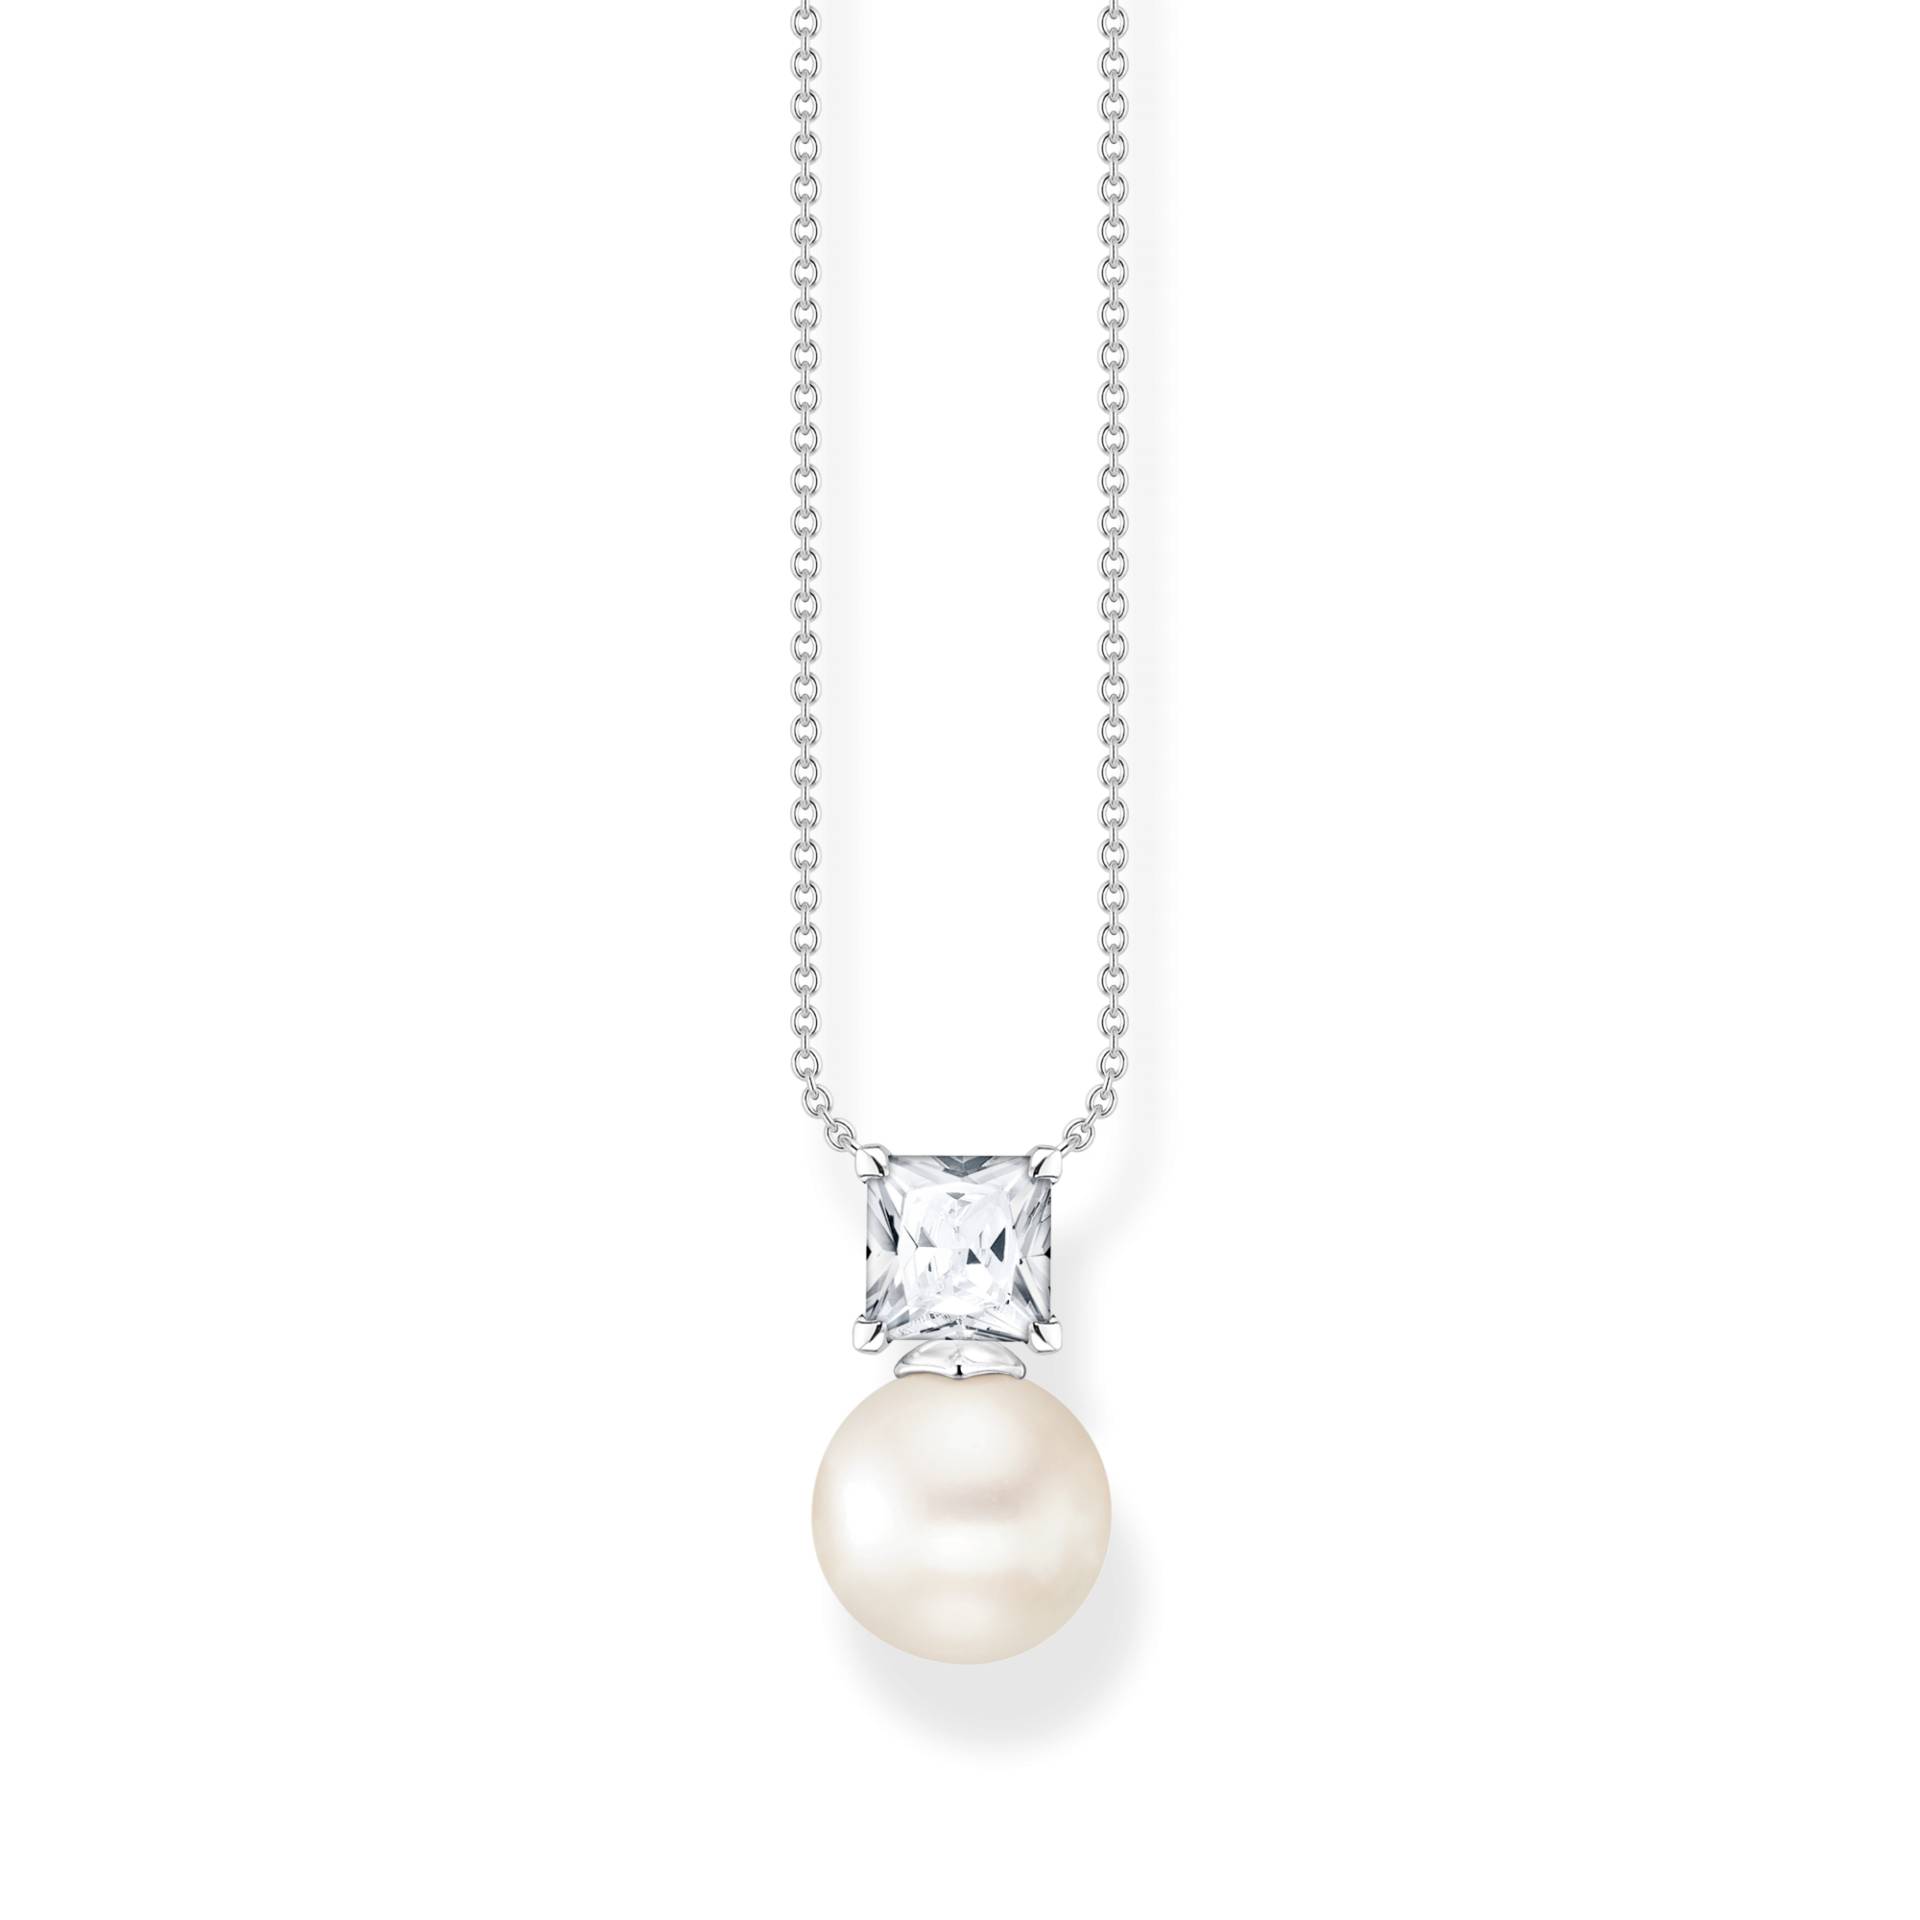 Thomas Sabo Kette Perle mit weißem Stein silber weiß KE2163-167-14-L45V